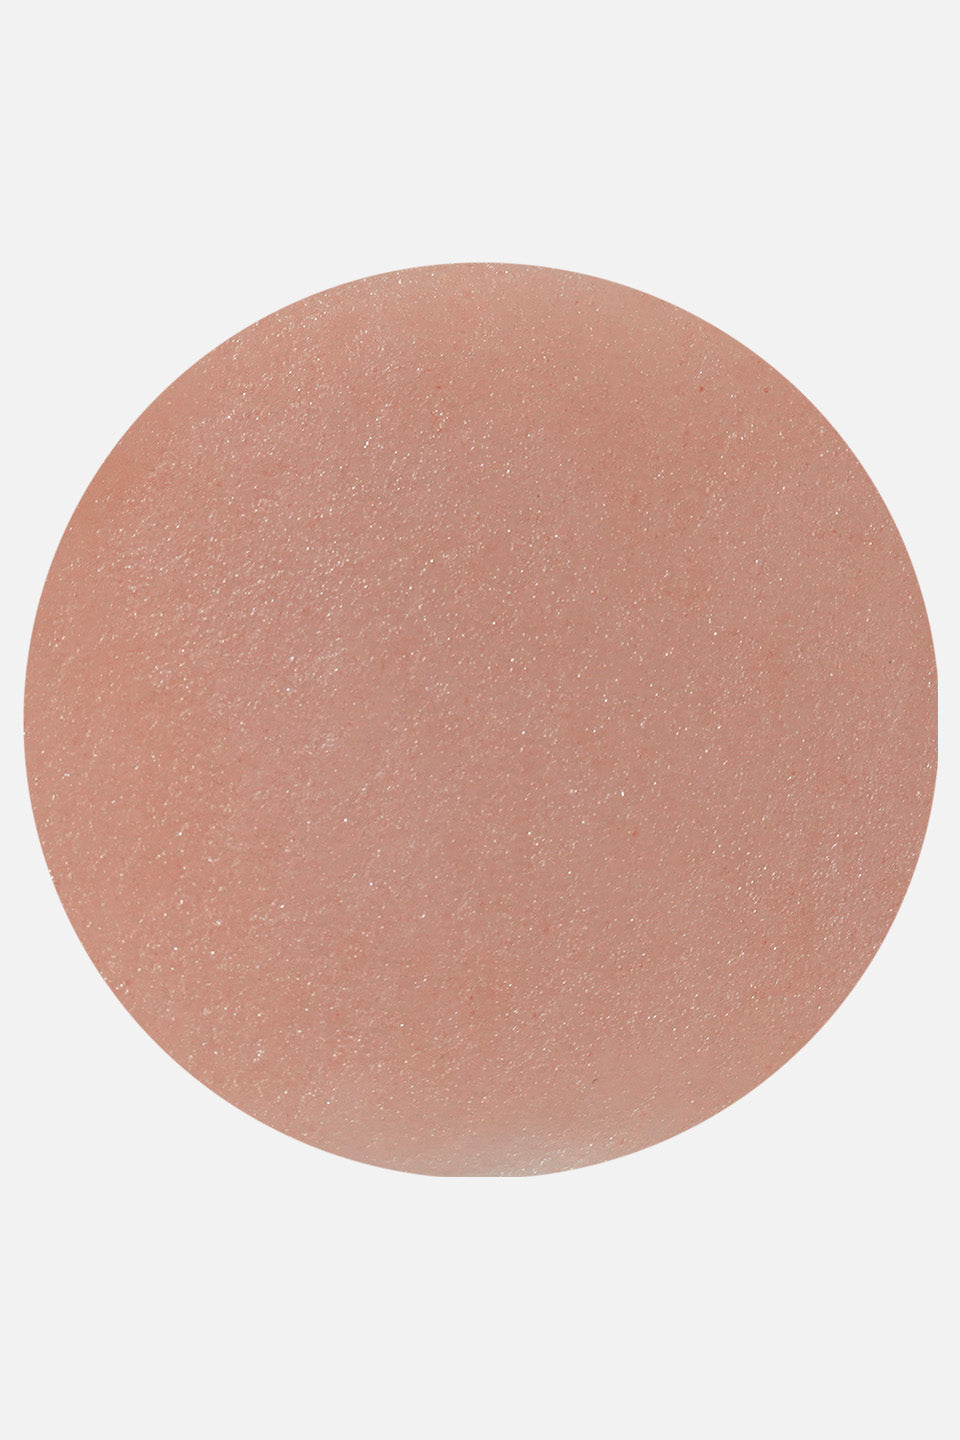 Polvere acrilica rosa chiaro Polypink Cover 45 g